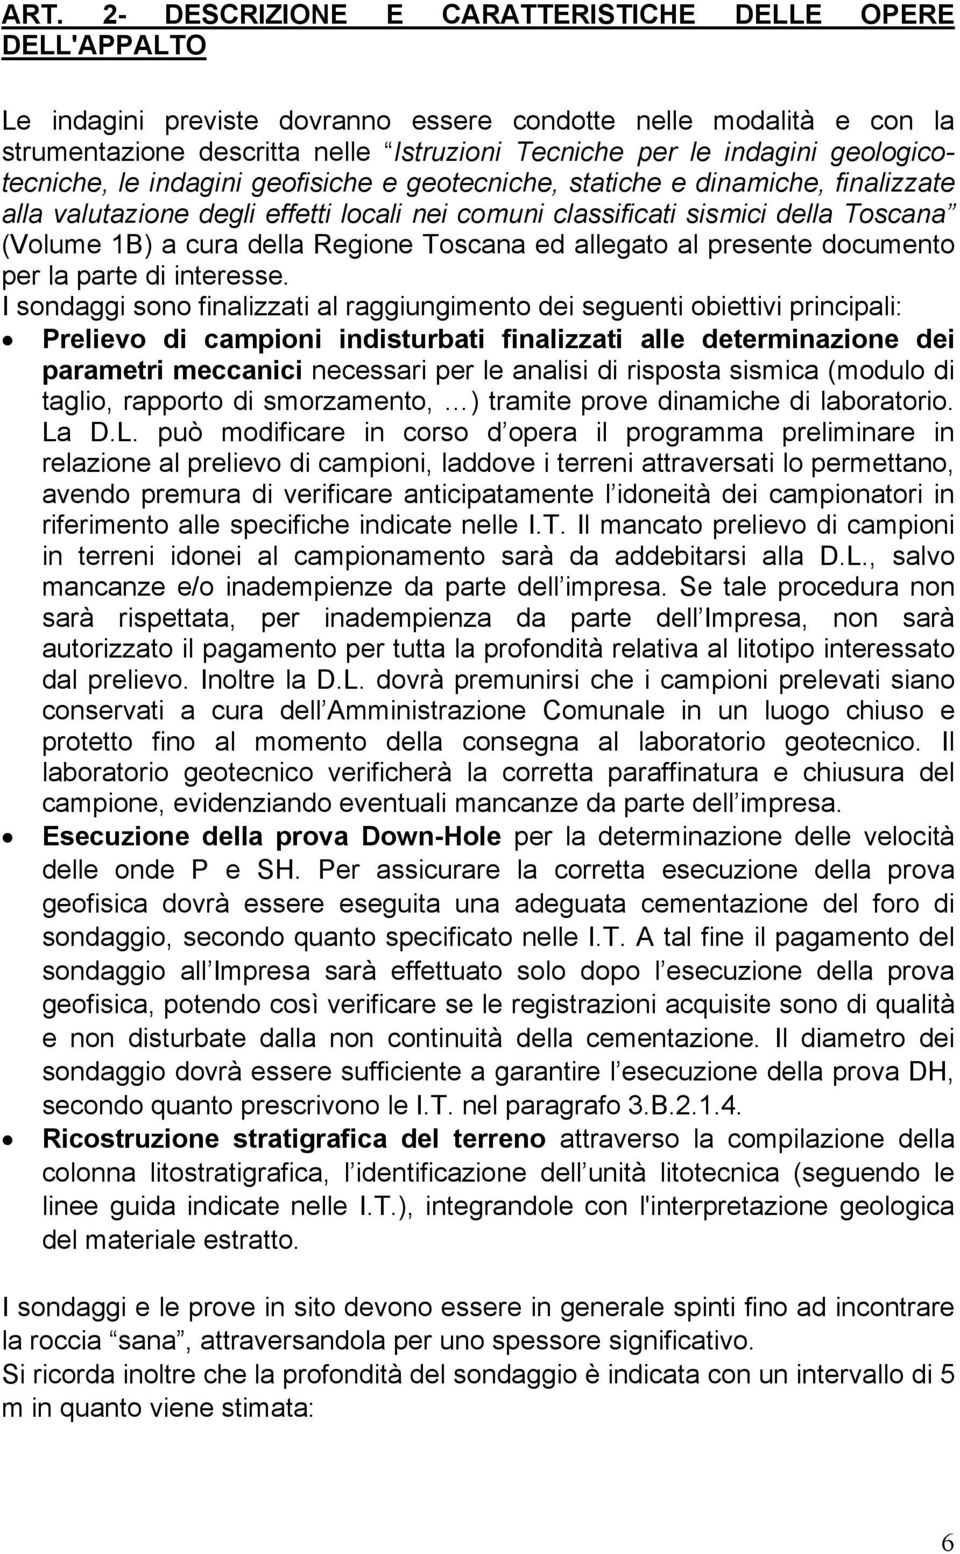 Regione Toscana ed allegato al presente documento per la parte di interesse.